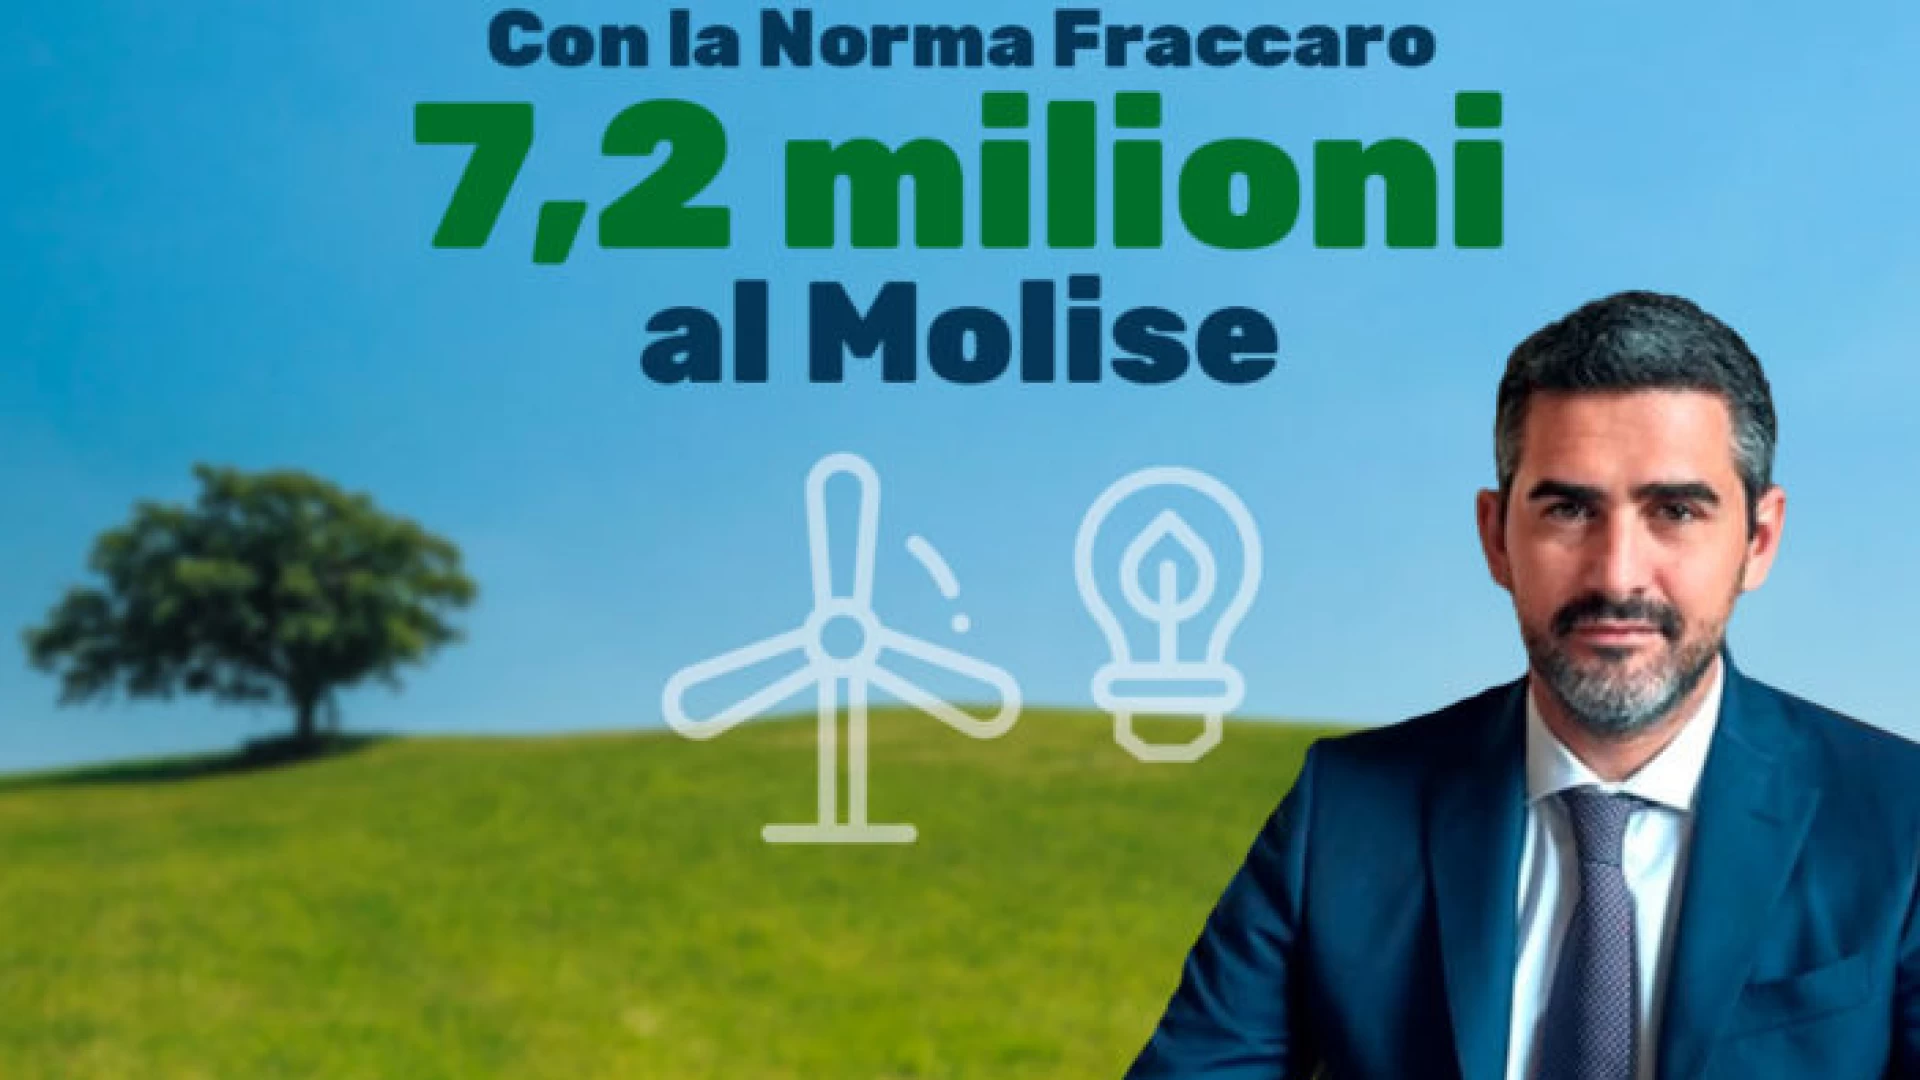 Norma Fraccaro in arrivo sette milioni di euro per il Molise.